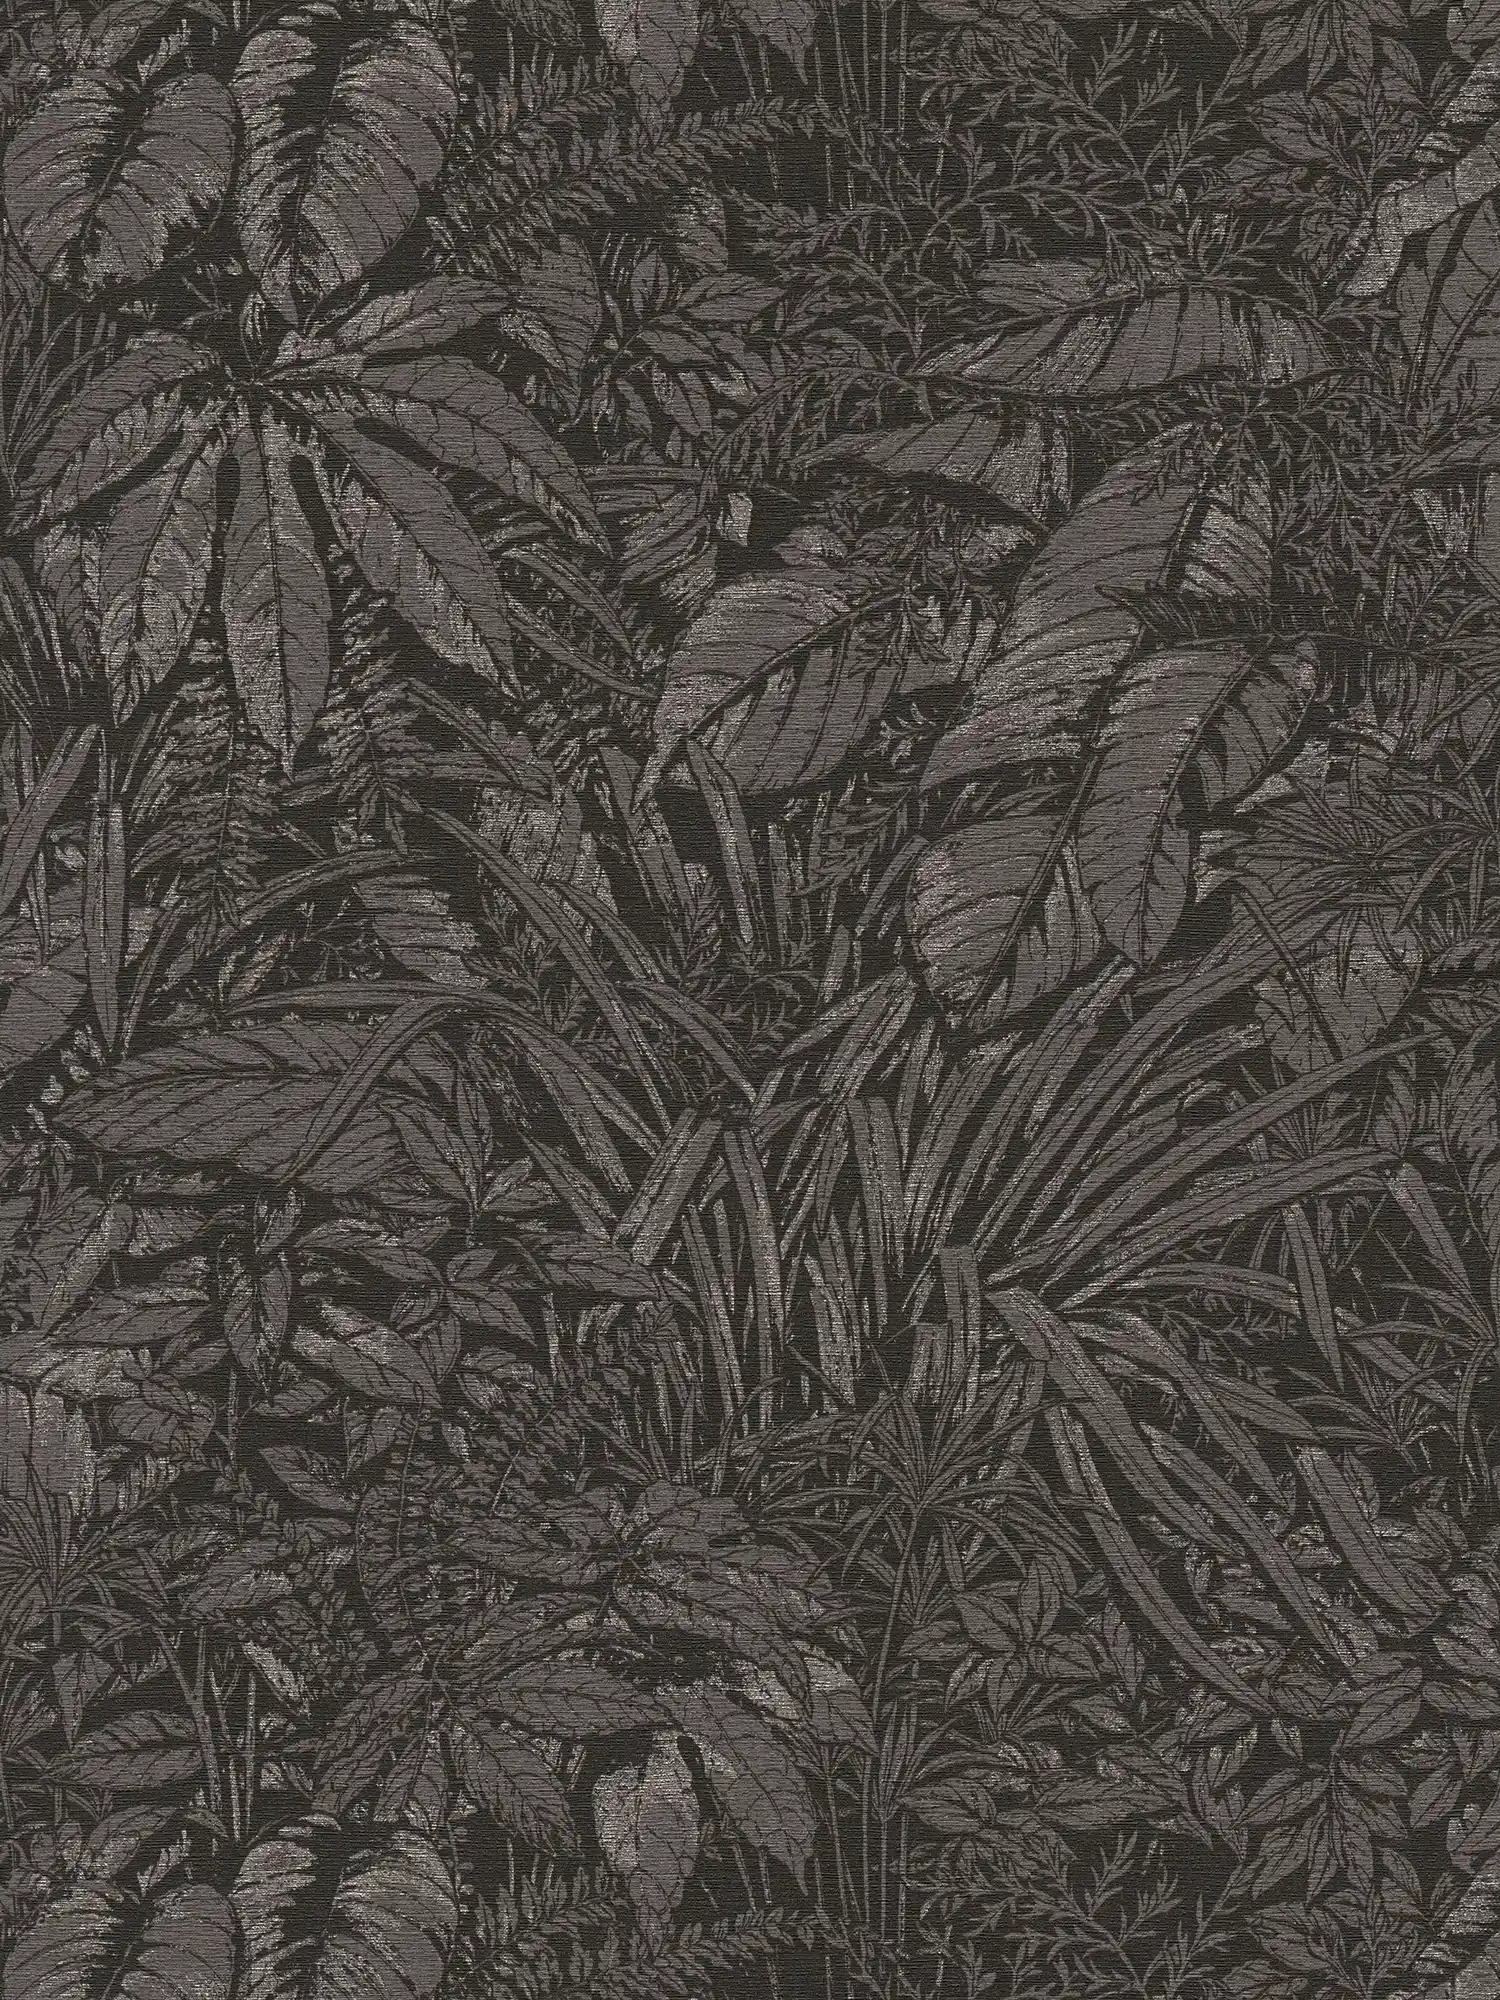 Florale Vliestapete mit Dschungelbemusterung – Schwarz, Grau, Silber
